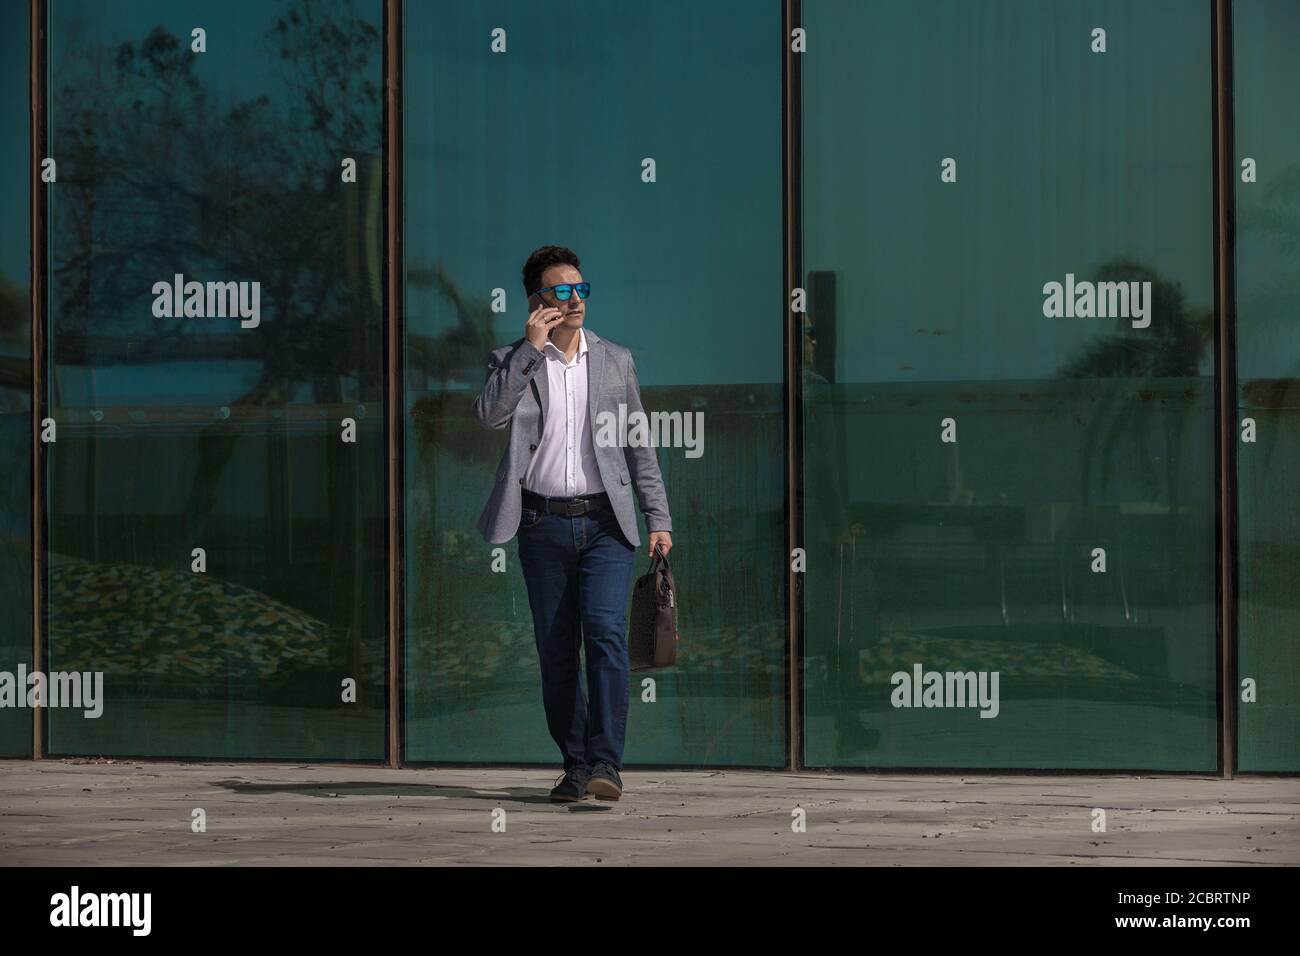 Full Body serious Erwachsenen Mann in smart casual Outfit suchen Unterwegs und auf dem Smartphone sprechen, während Sie in der Nähe der Glaswand gehen An der City Street Stockfoto